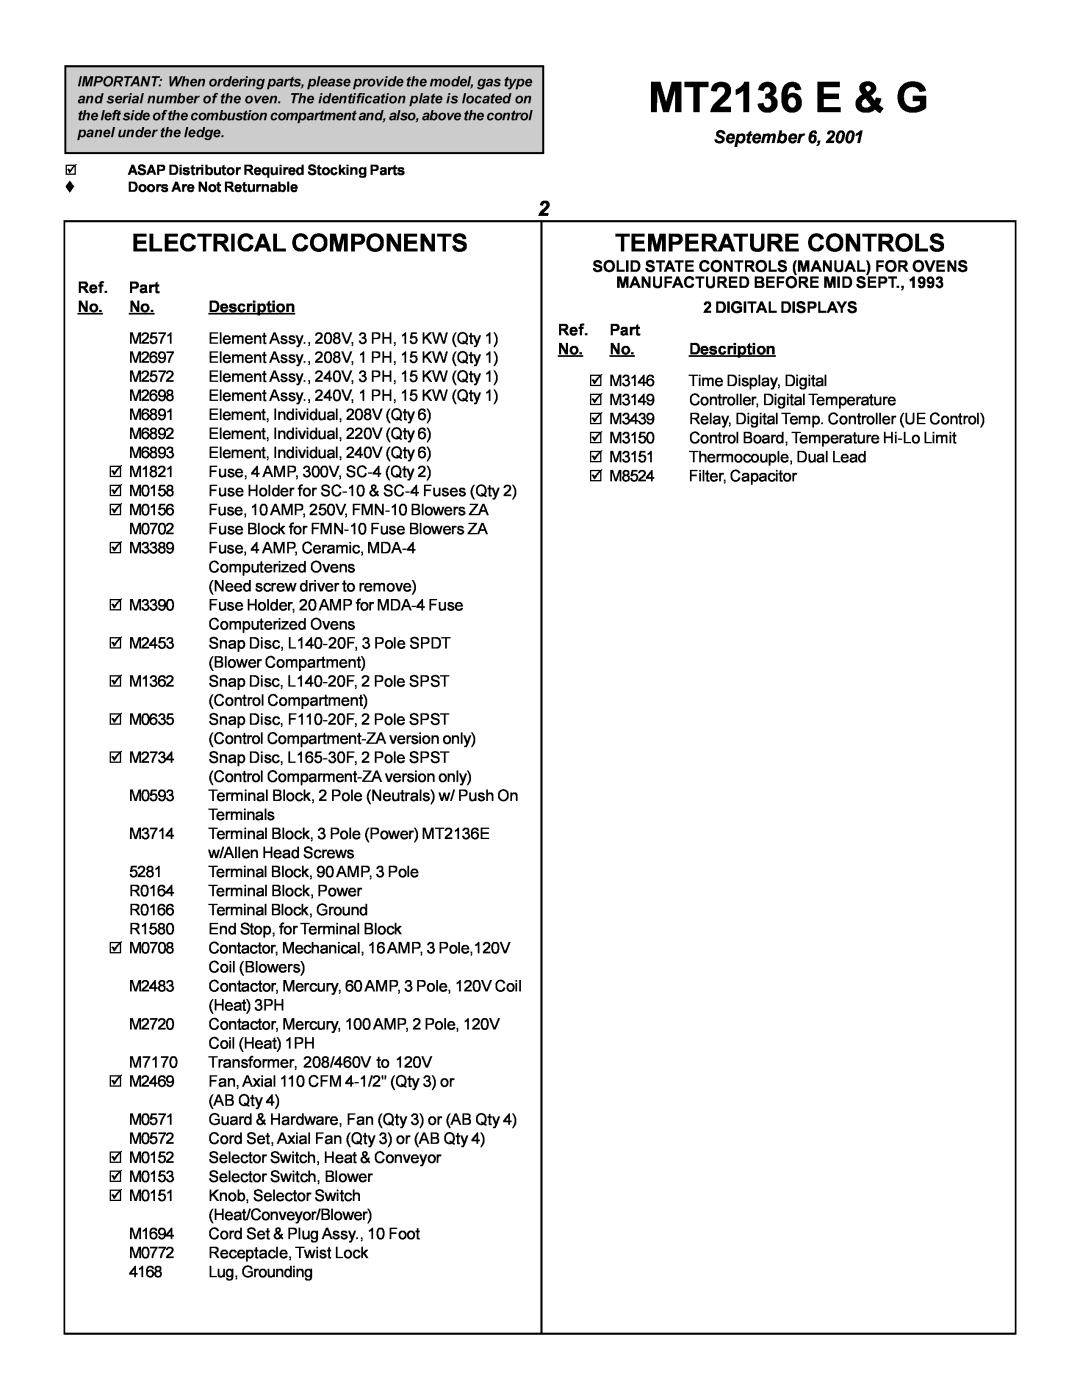 Blodgett MT2136 G Electrical Components, Temperature Controls, MT2136 E & G, September, Ref. Part No. No. Description 